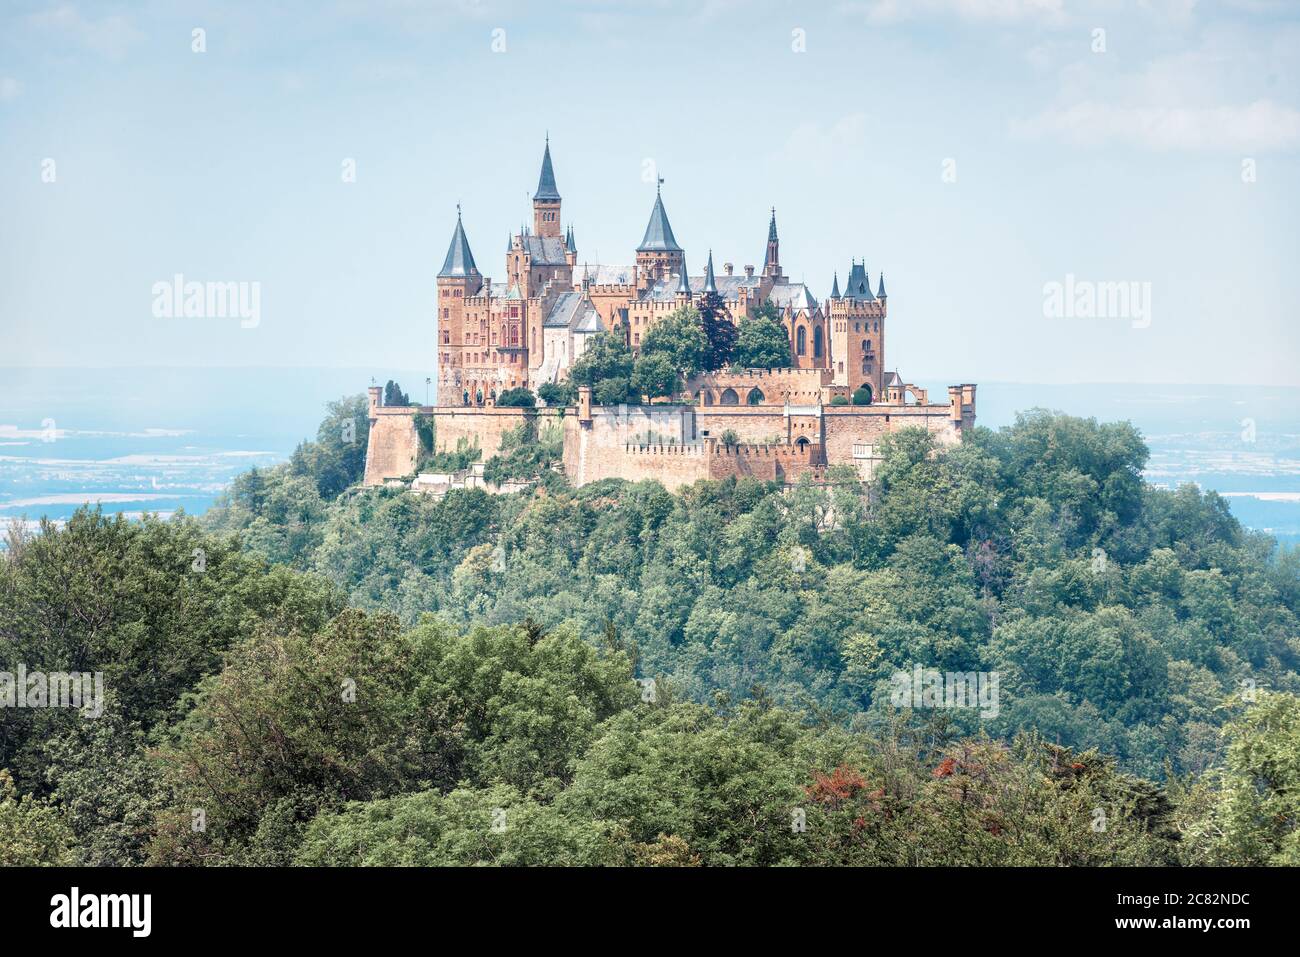 Schloss Hohenzollern im Sommer morgens, Deutschland. Es ist ein berühmtes Wahrzeichen in der Nähe von Stuttgart. Landschaft mit märchenhaften gotischen Schloss wie Palast. Szeni Stockfoto